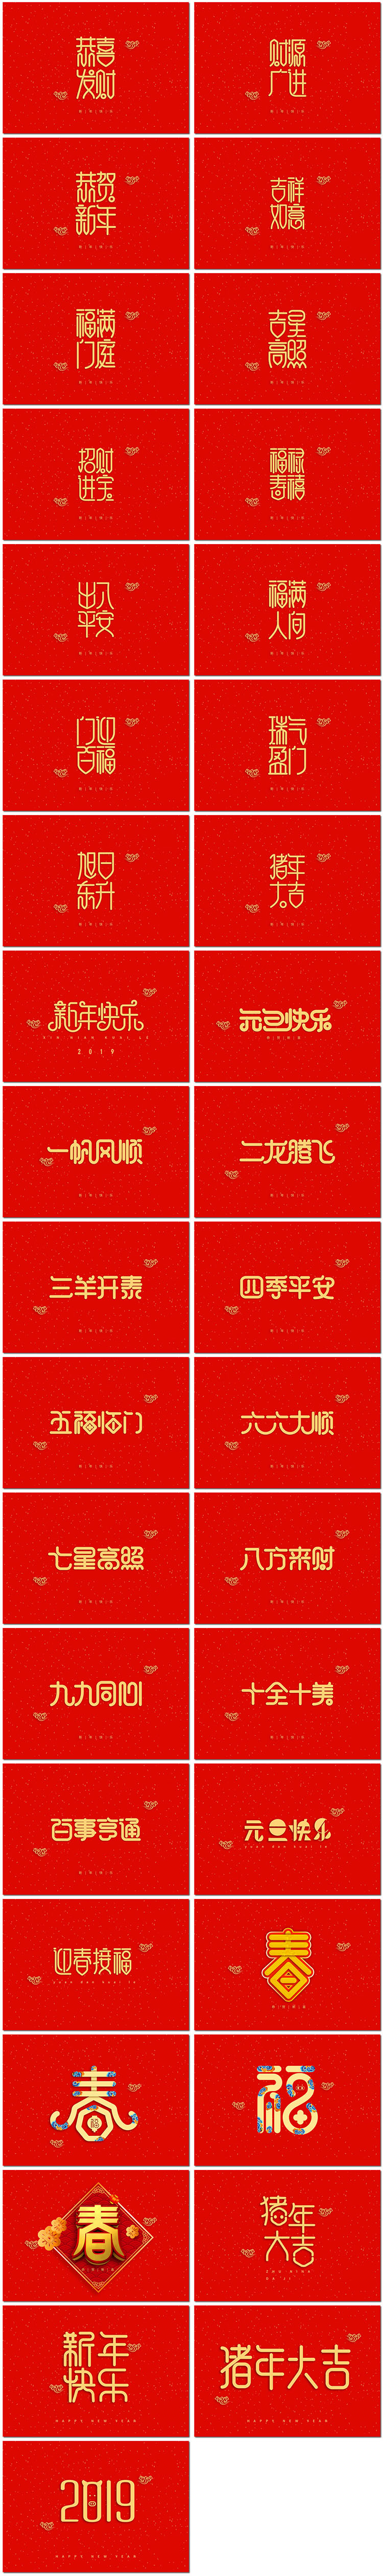 新年快乐新春节祝福语成语艺术字体恭喜发财海报psd设计模板素材